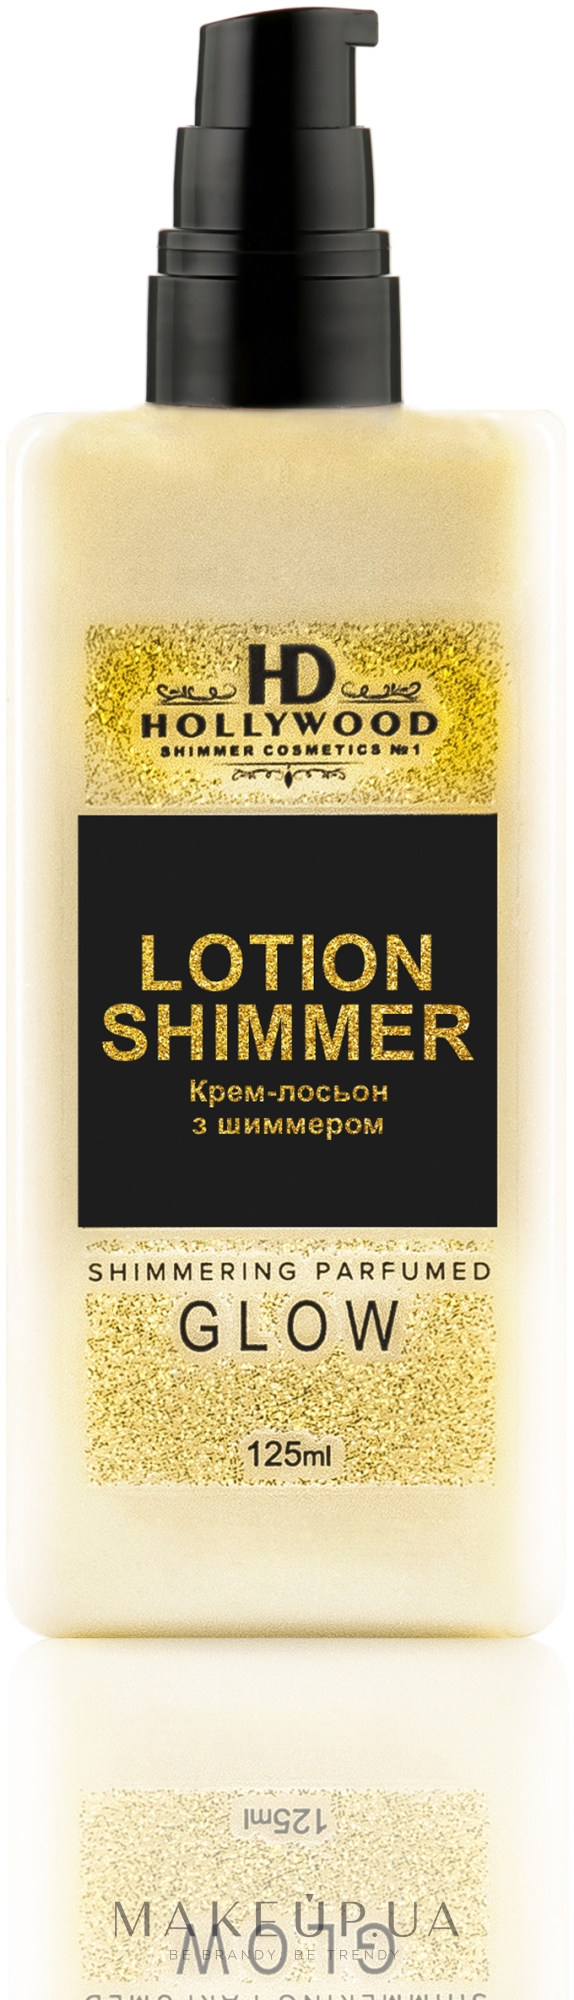 Крем-лосьйон з шимером для тіла - HD Hollywood Lotion Shimmer — фото 125ml